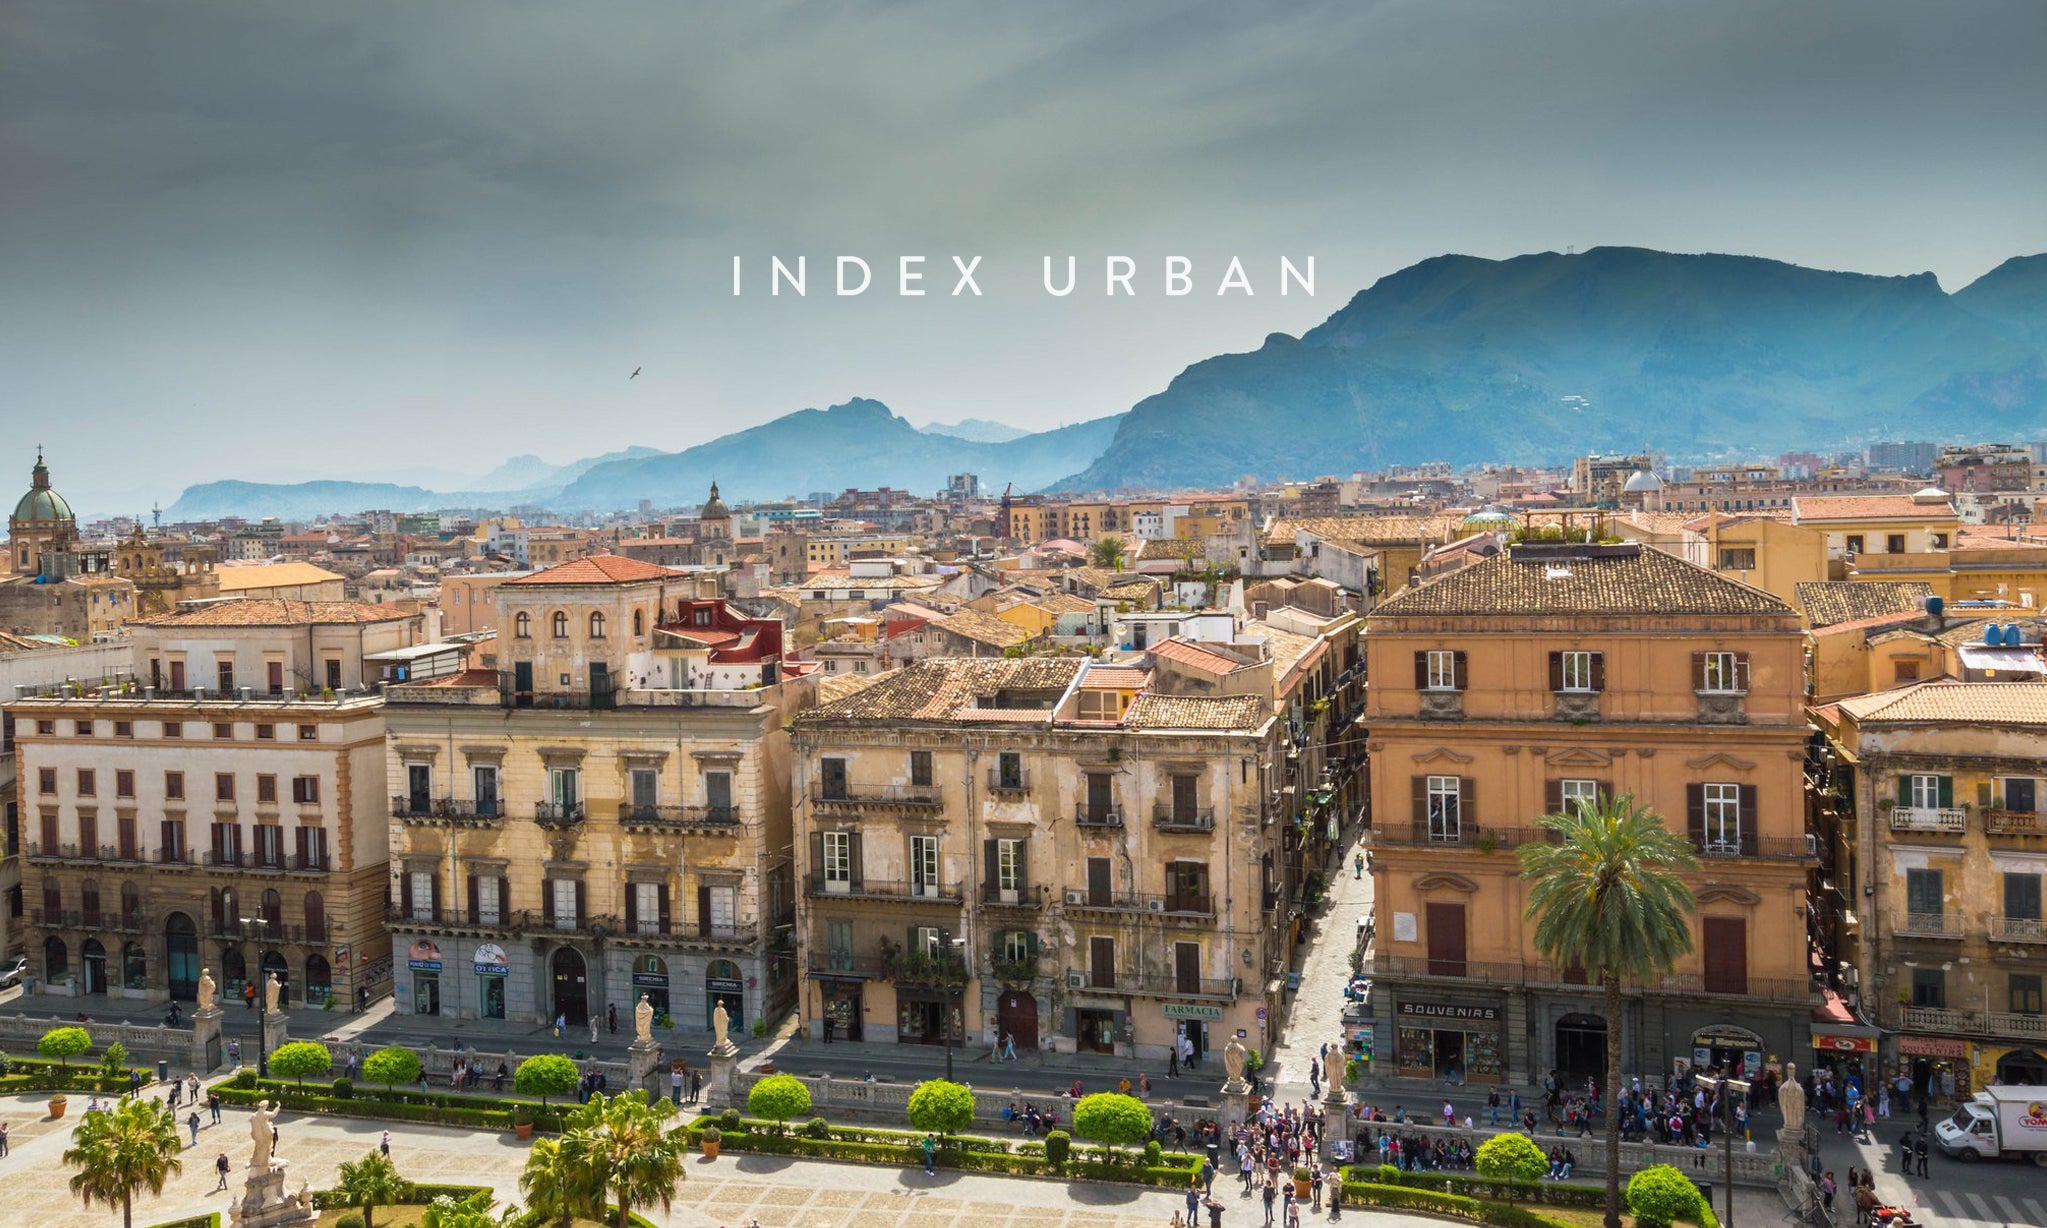 Index Urban